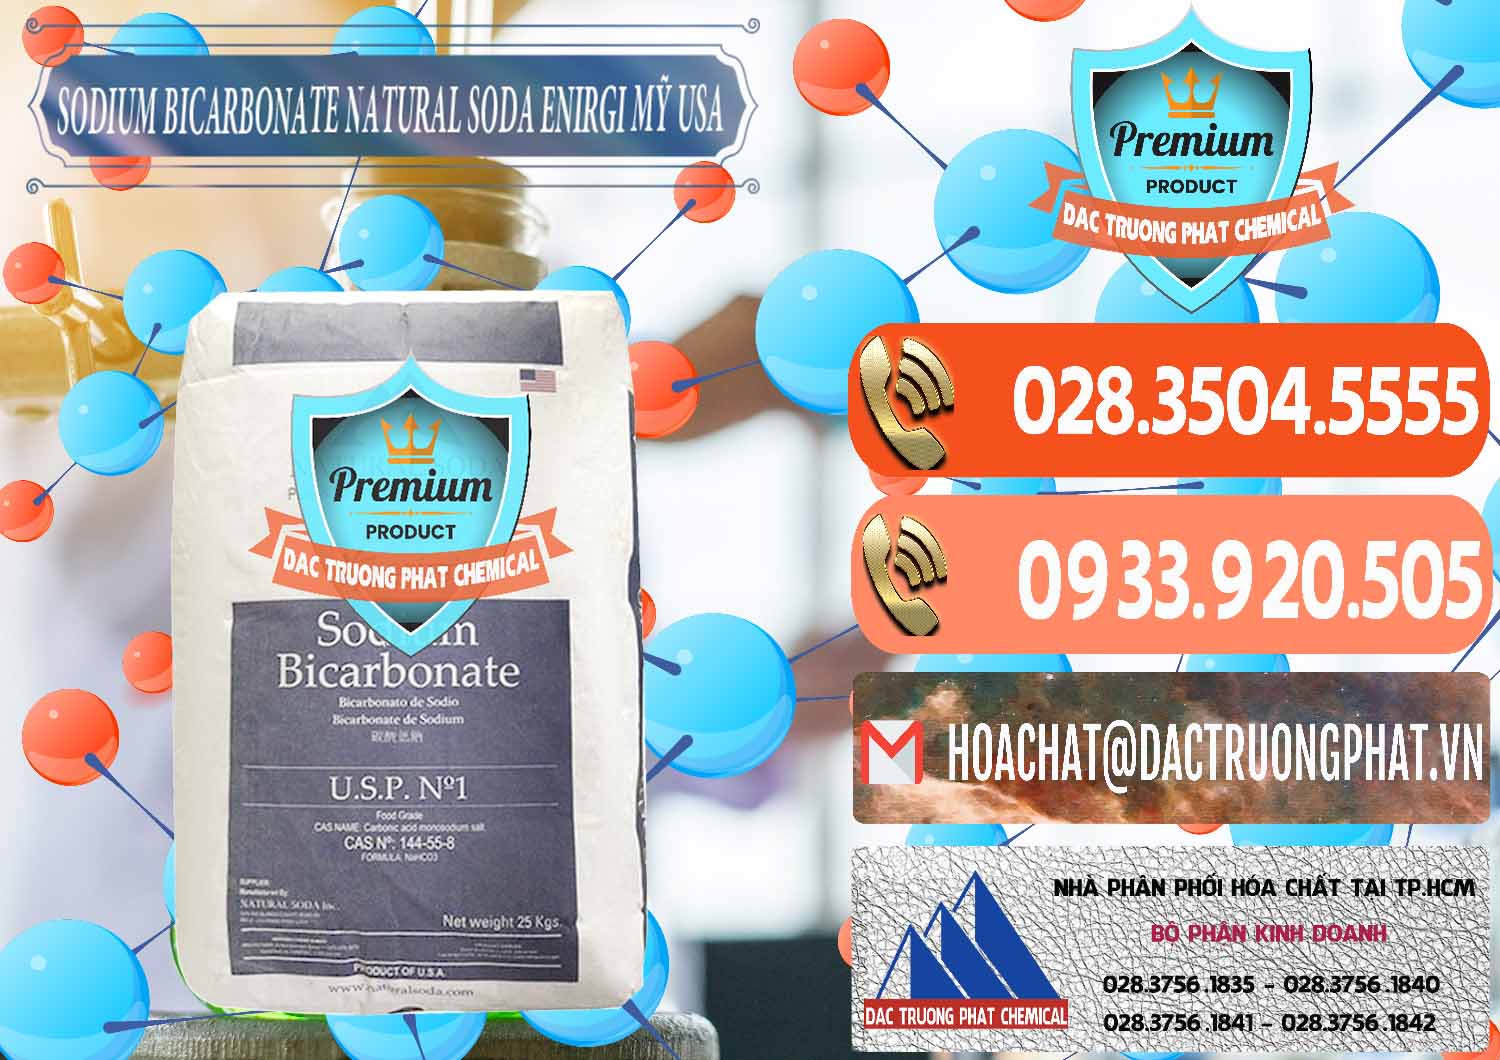 Bán ( cung ứng ) Sodium Bicarbonate – Bicar NaHCO3 Food Grade Natural Soda Enirgi Mỹ USA - 0257 - Bán và cung cấp hóa chất tại TP.HCM - hoachatmientay.com